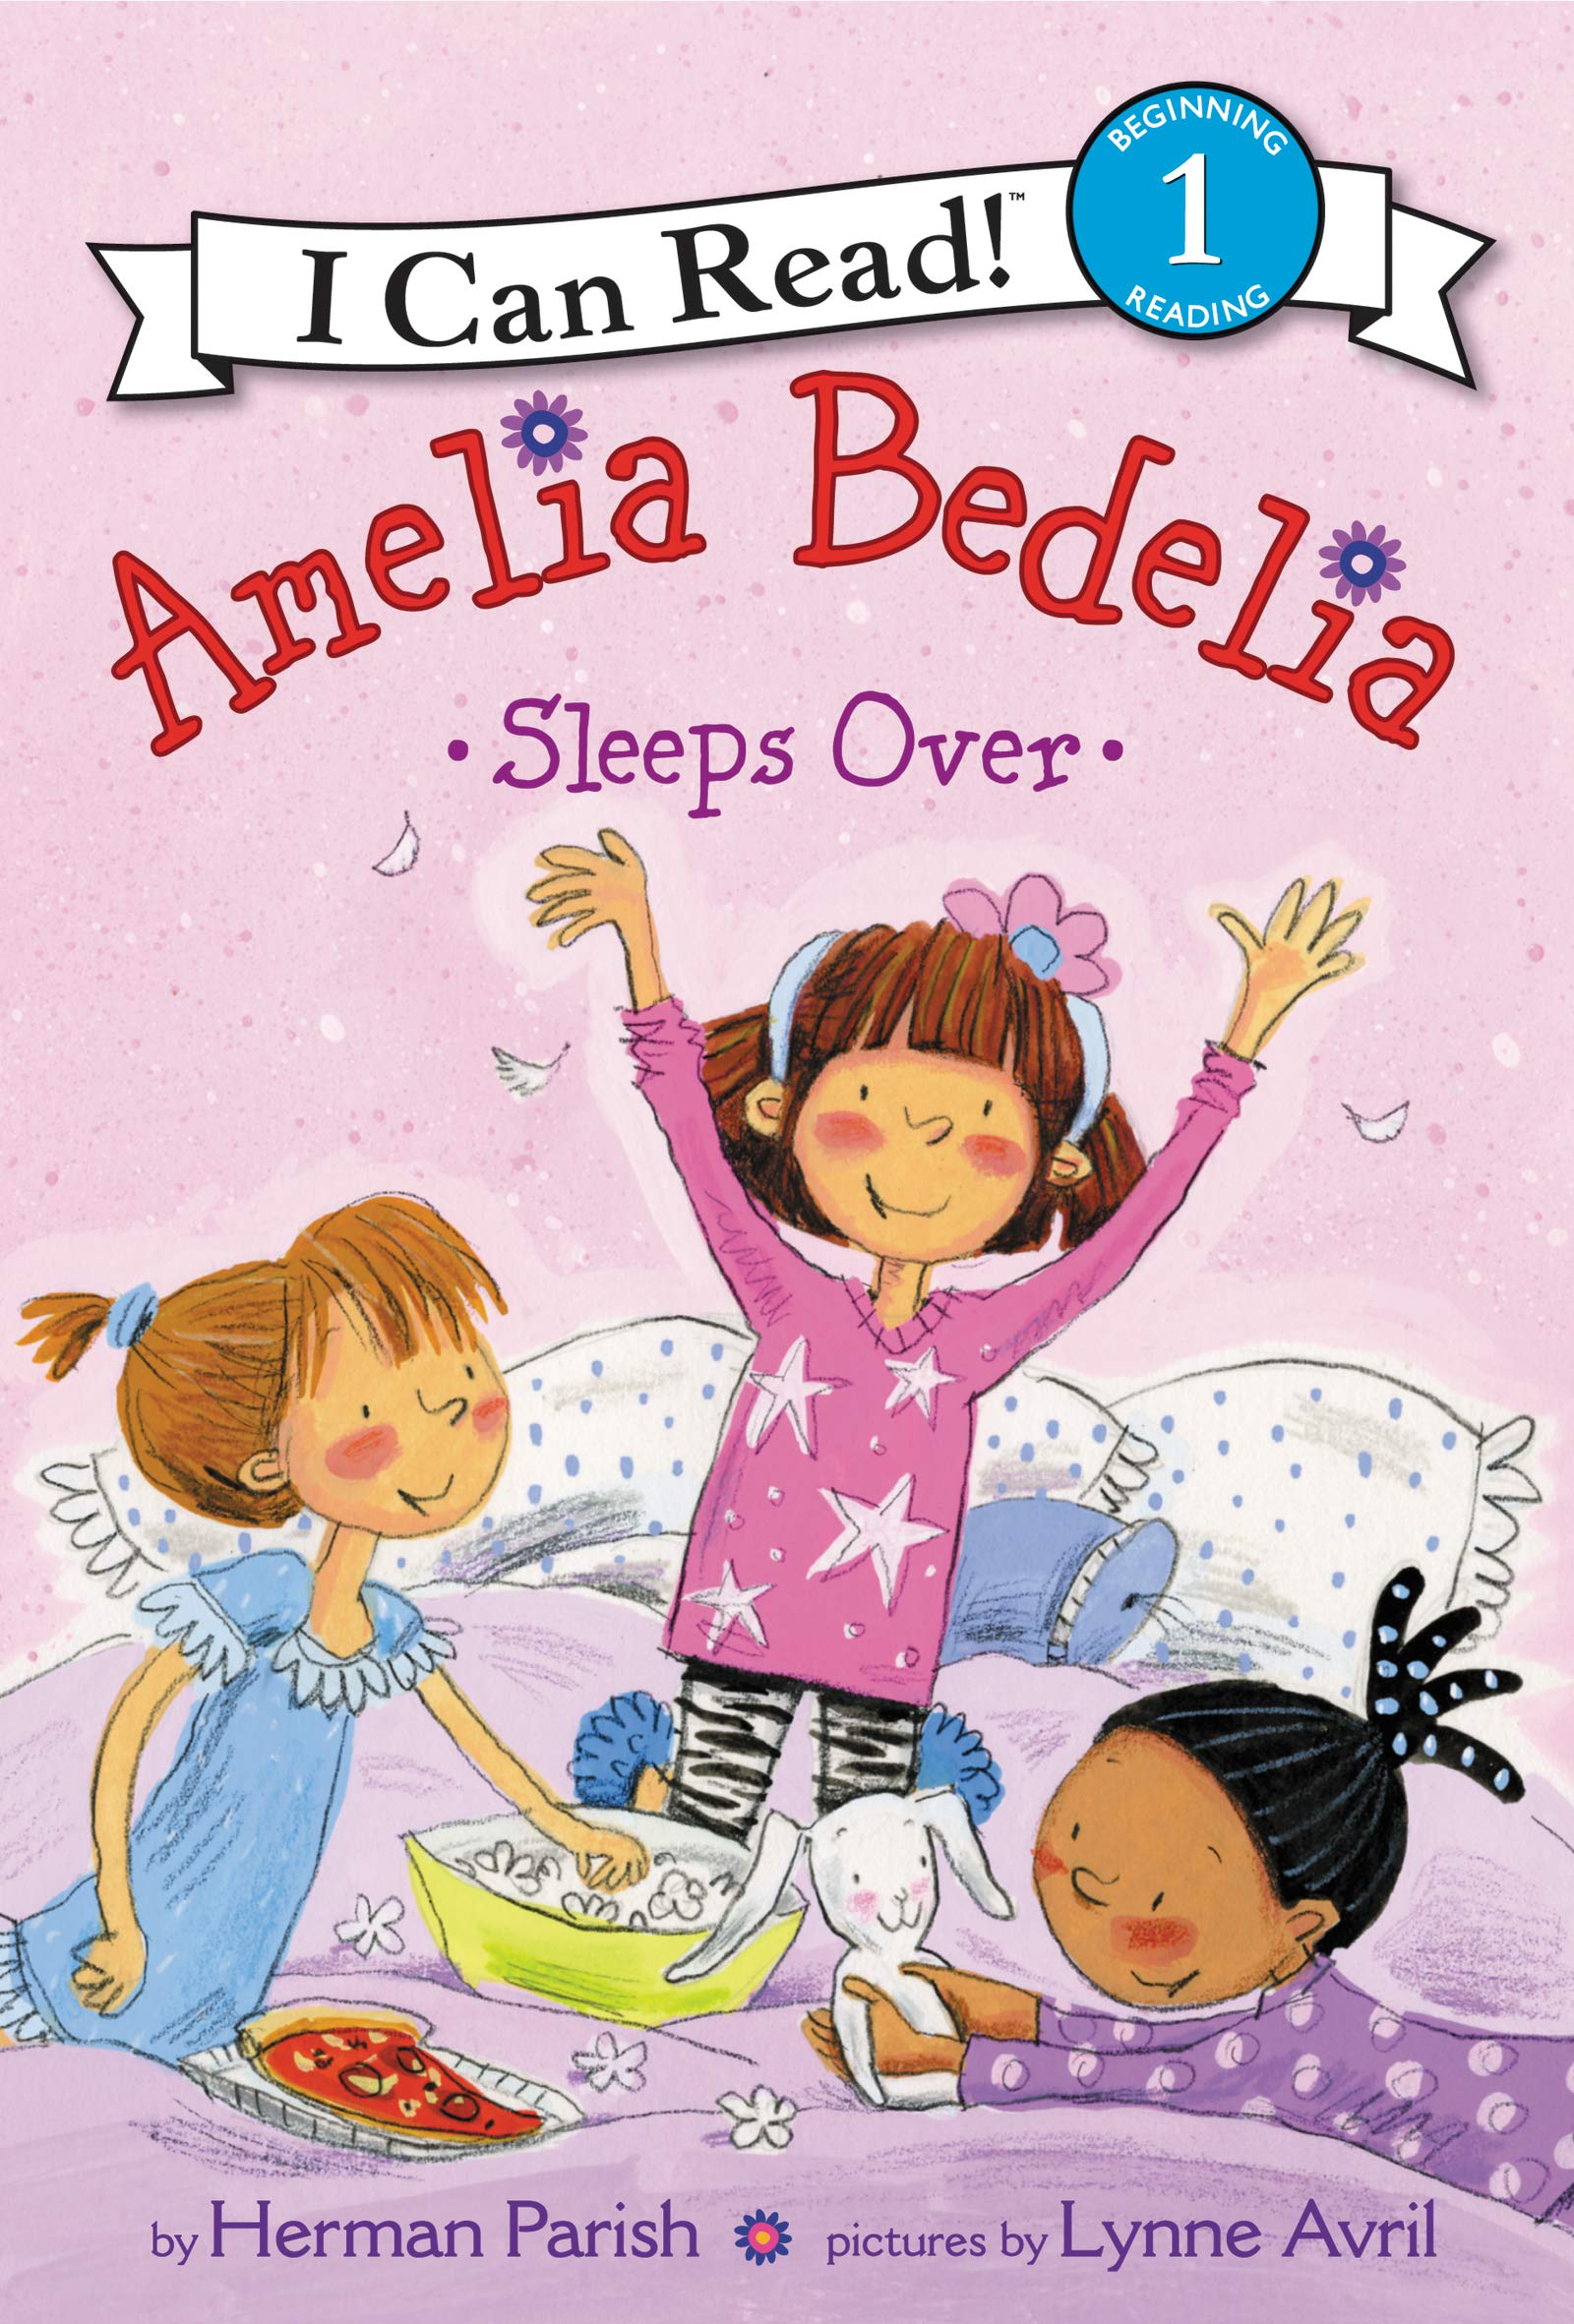 IMG : I can Read Level 1 Amelia Bedalia Sleeps Over